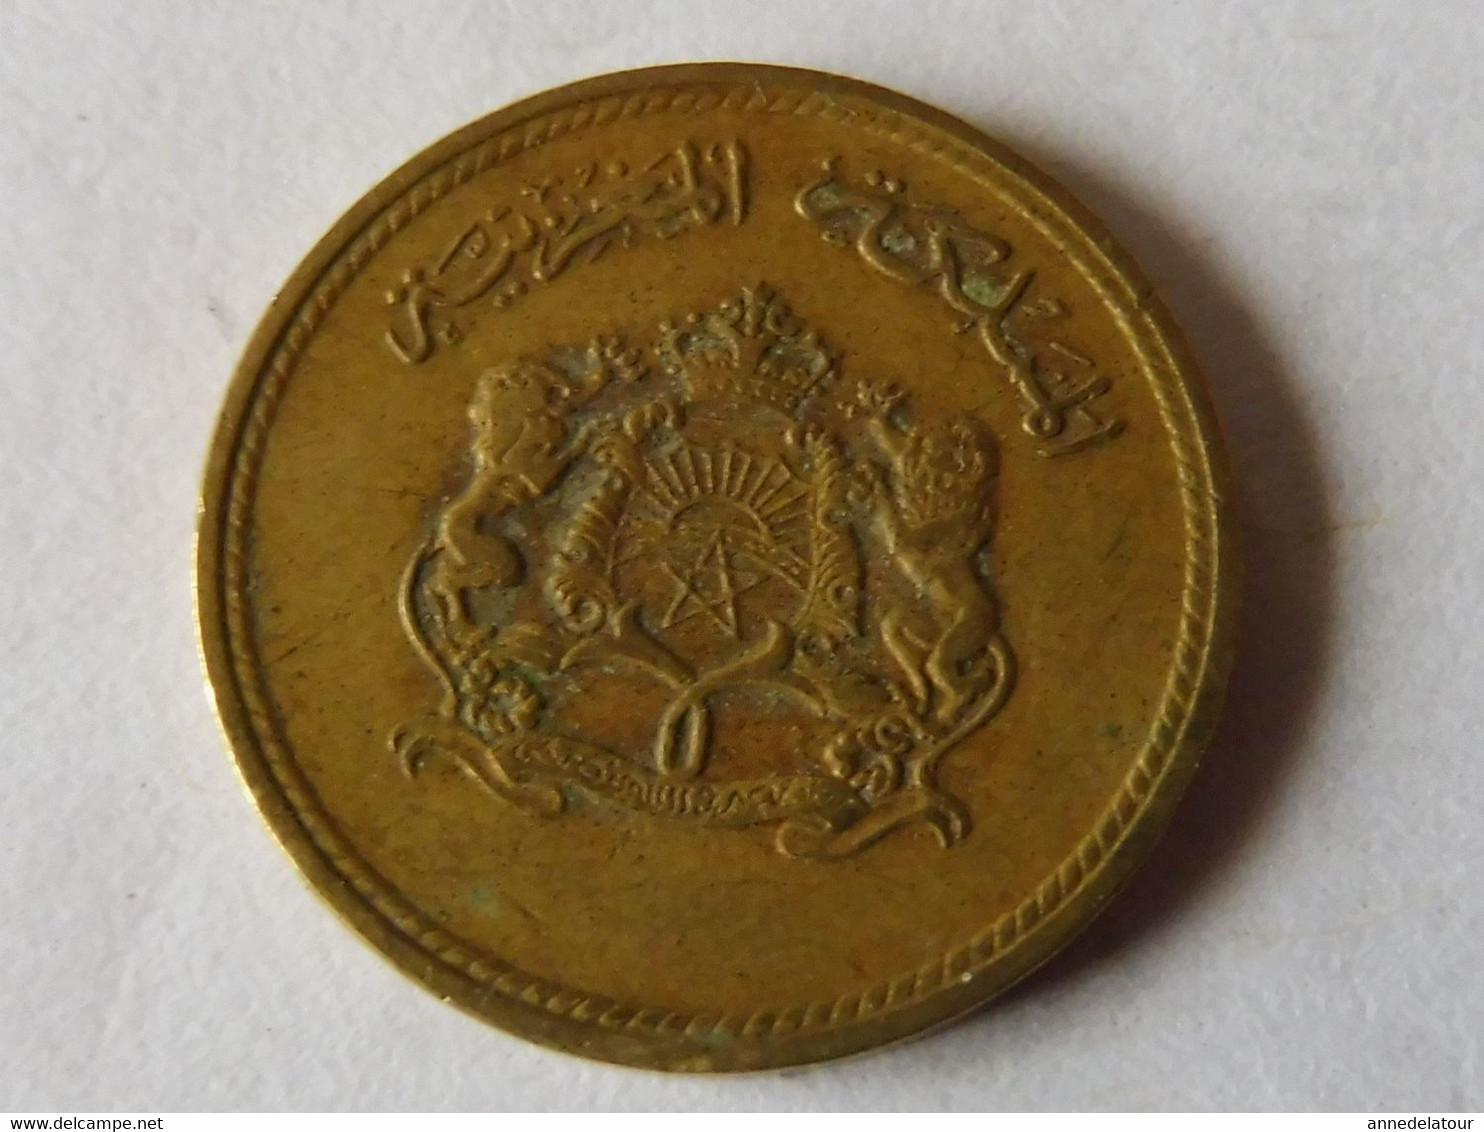 1 euro 2002, Belgium - Coin value - uCoin.net